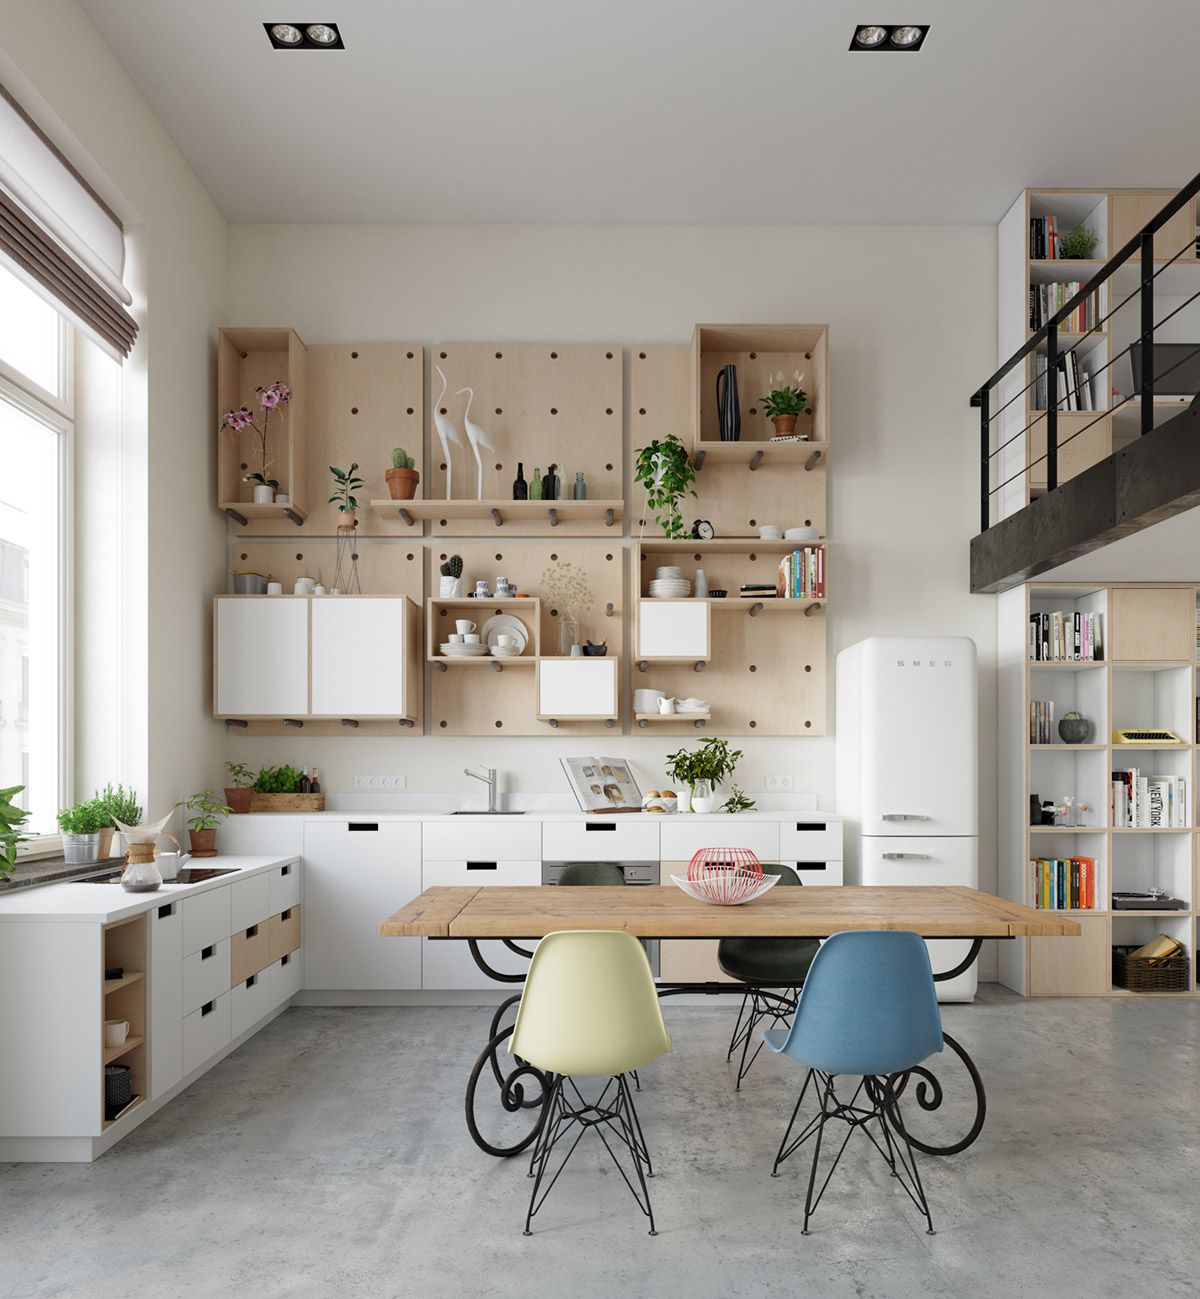 Trong căn bếp, giá treo trên tường có sự khác biệt chính là điểm nhấn trong cả không gian Scandinavian này.